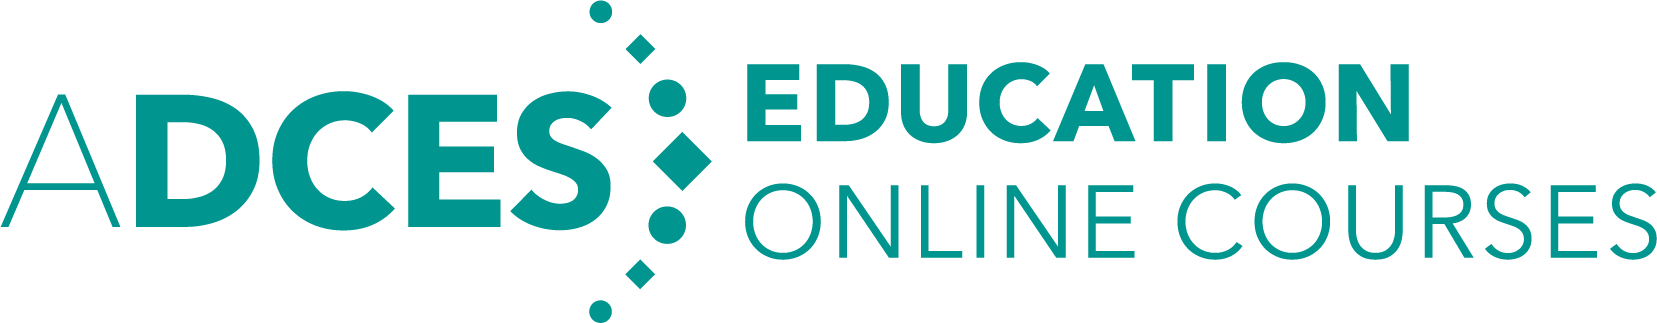 ADCES Education: Online Courses